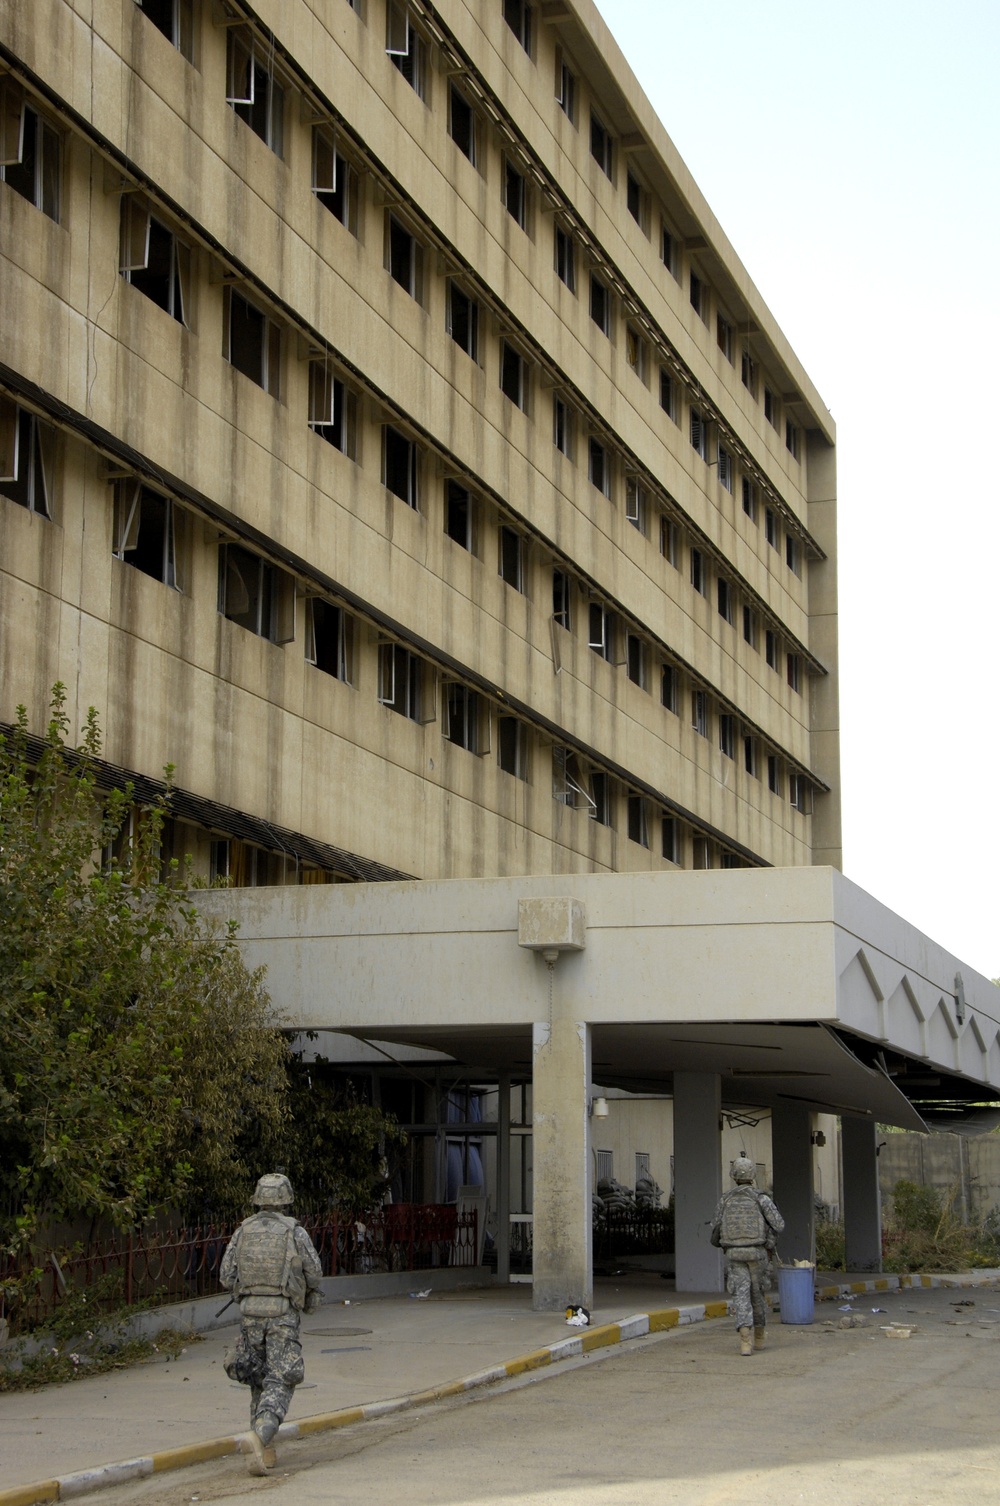 Visit Al Salam General Hospital, assess VBIED Damage